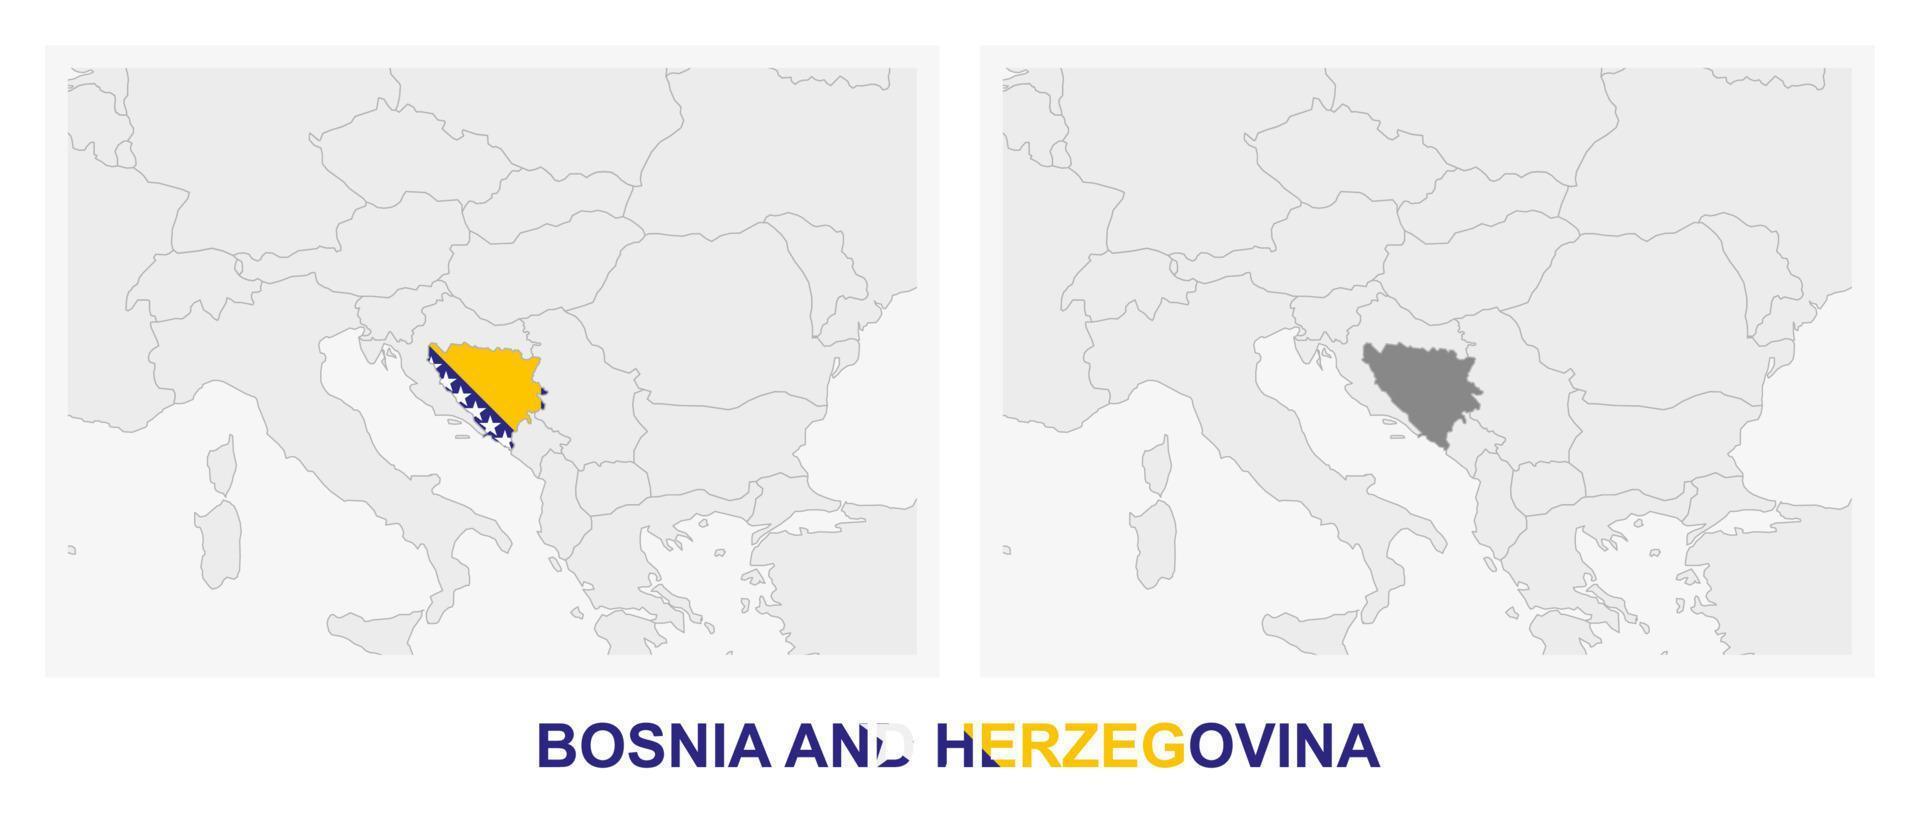 deux versions de la carte de la bosnie-herzégovine, avec le drapeau de la bosnie-herzégovine et soulignées en gris foncé. vecteur